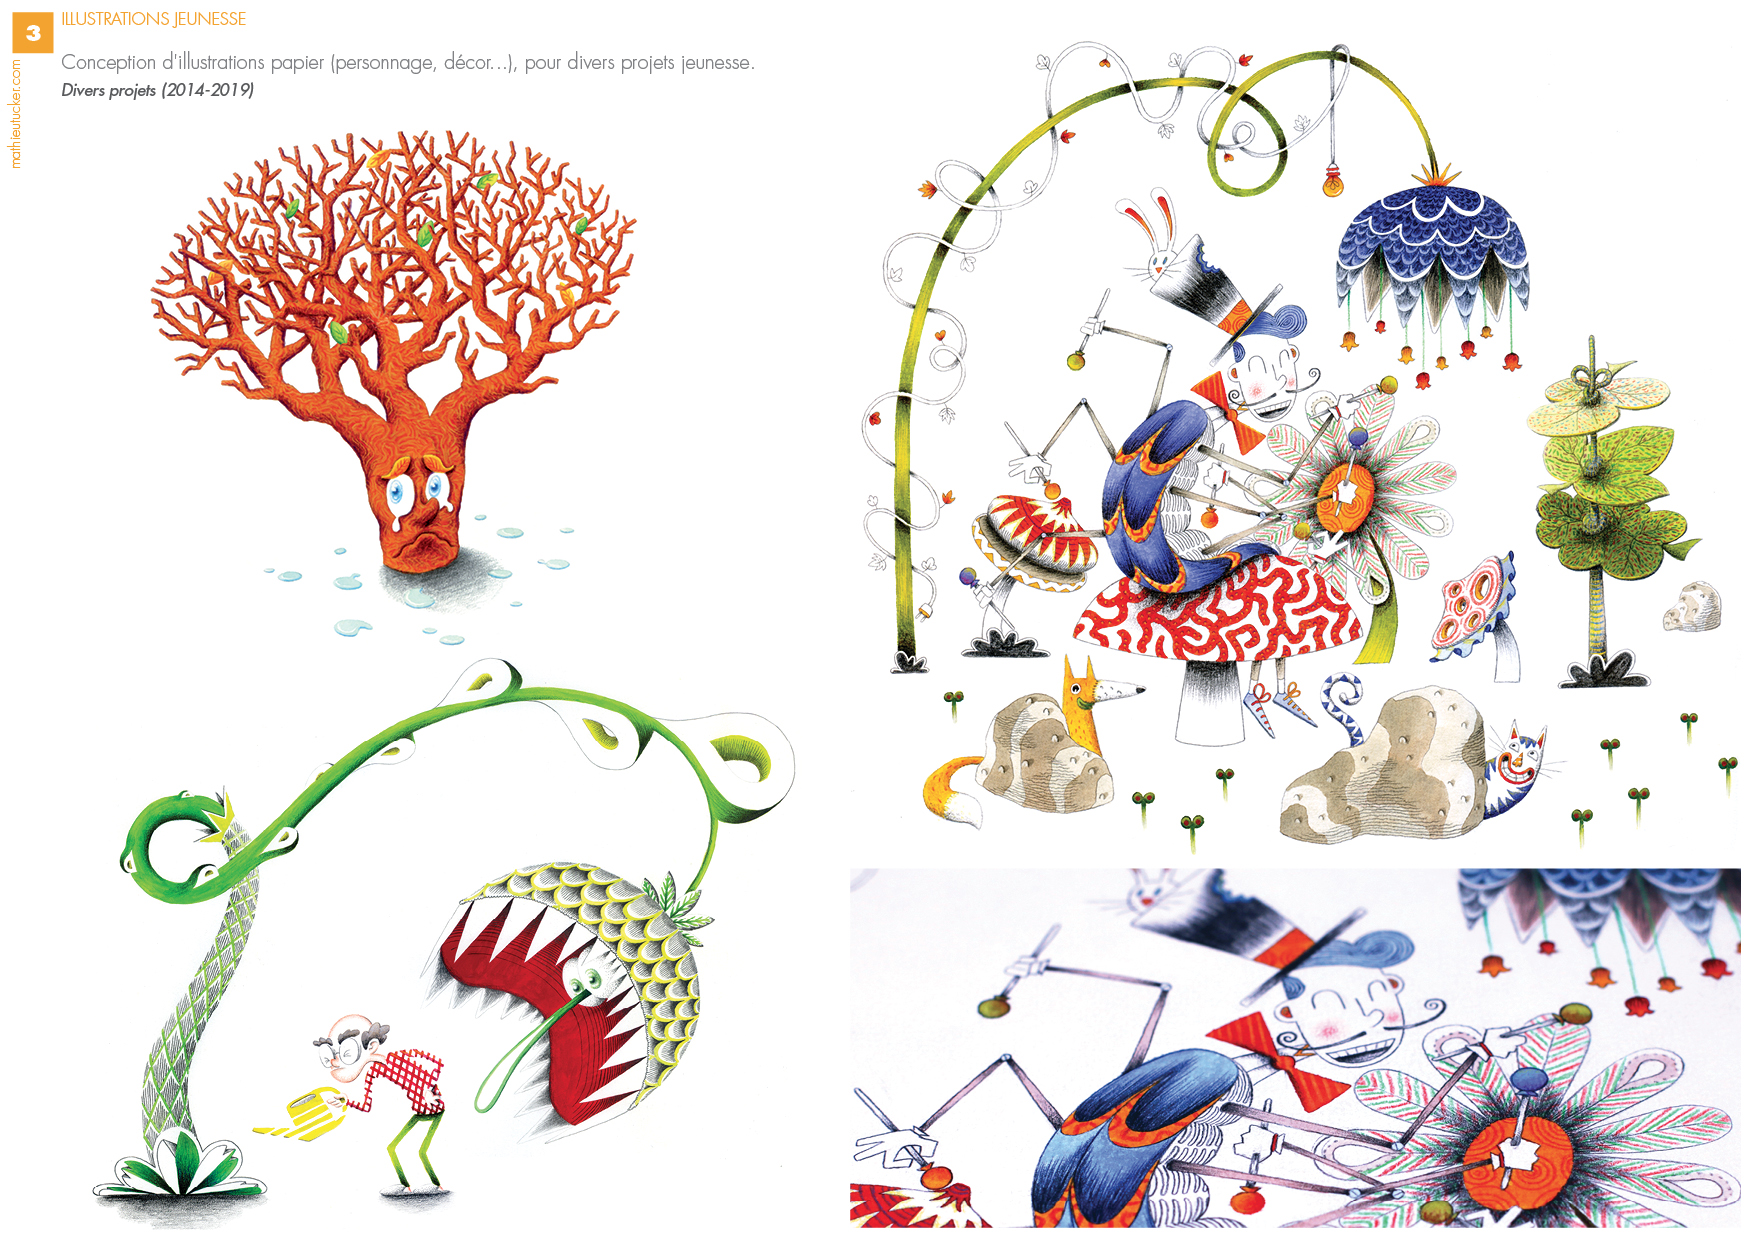 Illustrations jeunesse (2014 - 2019) Divers projets